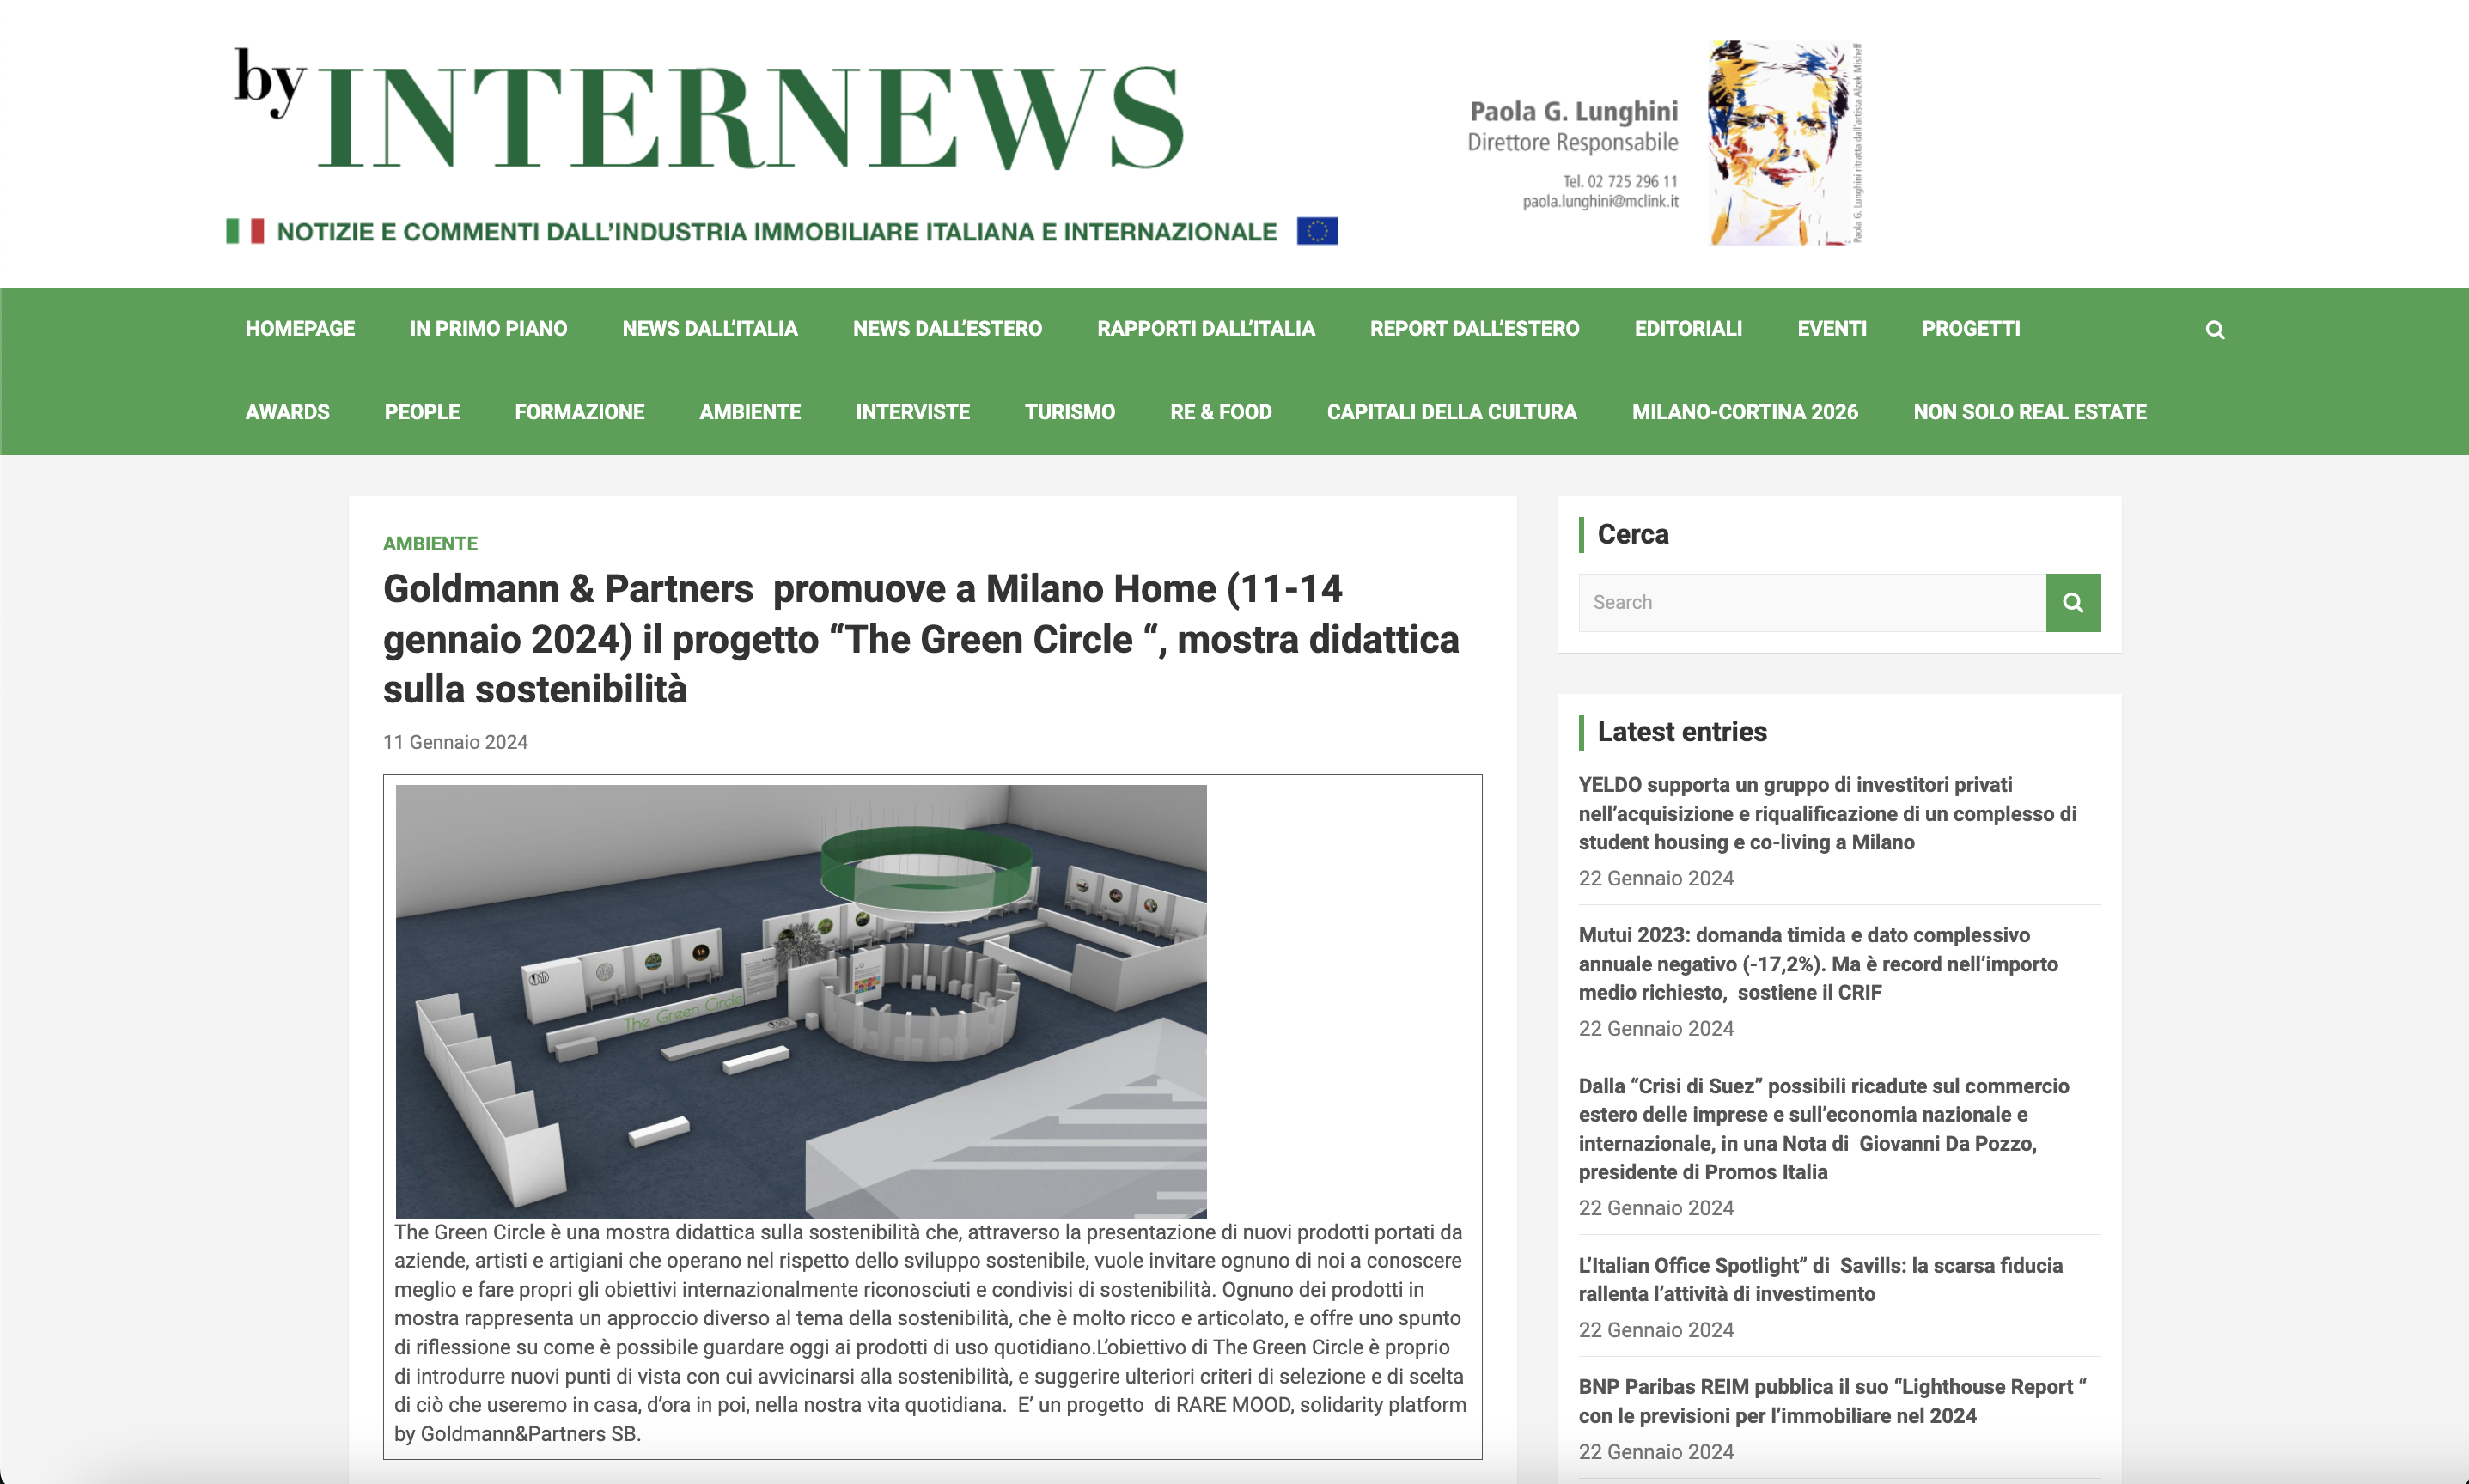 Goldmann & Partners promuove a Milano Home (11-14 gennaio 2024) il progetto “The Green Circle “, mostra didattica sulla sostenibilità